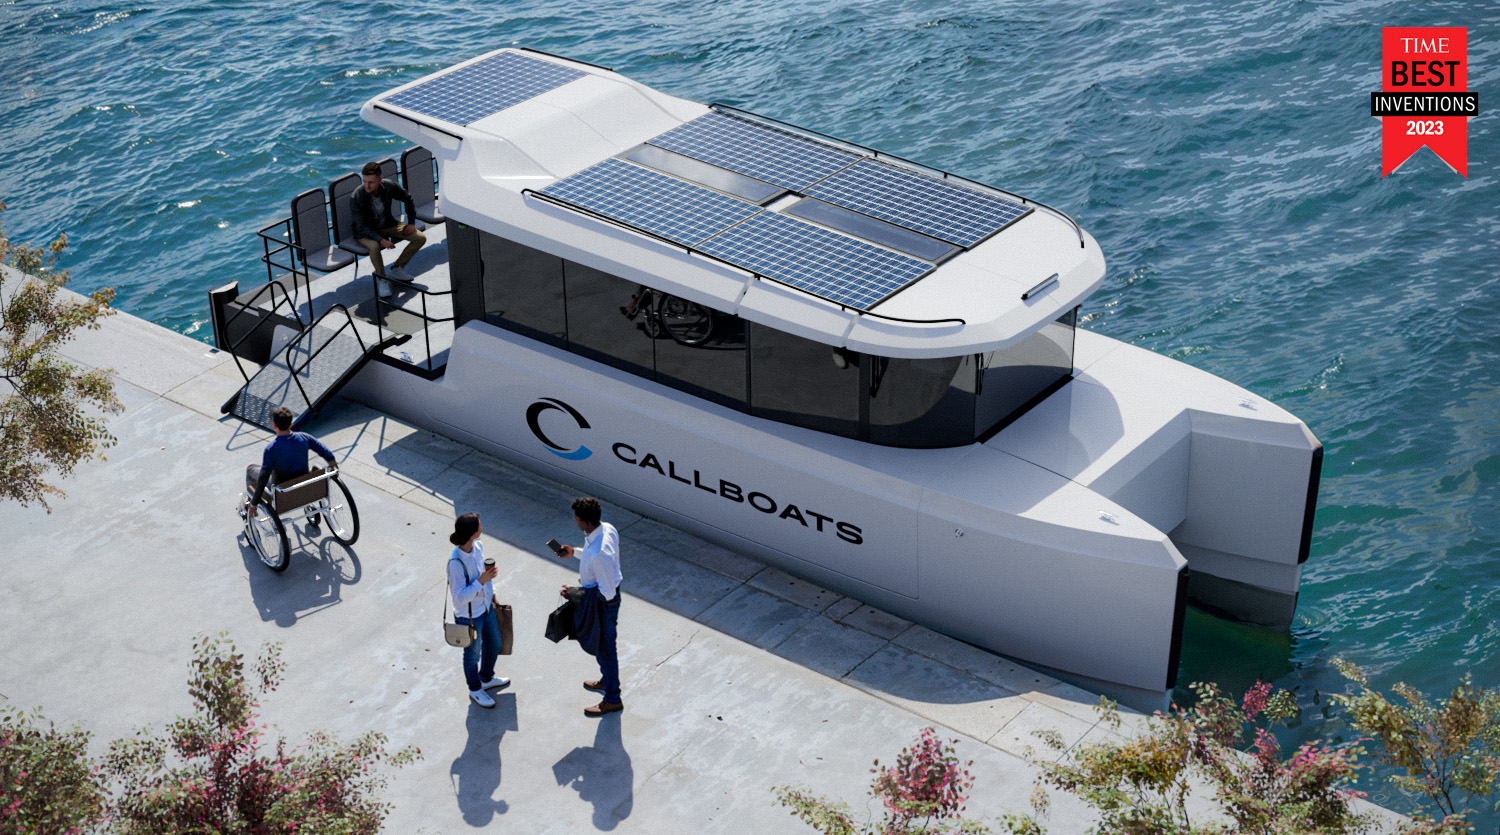 Callboats CAT 10L